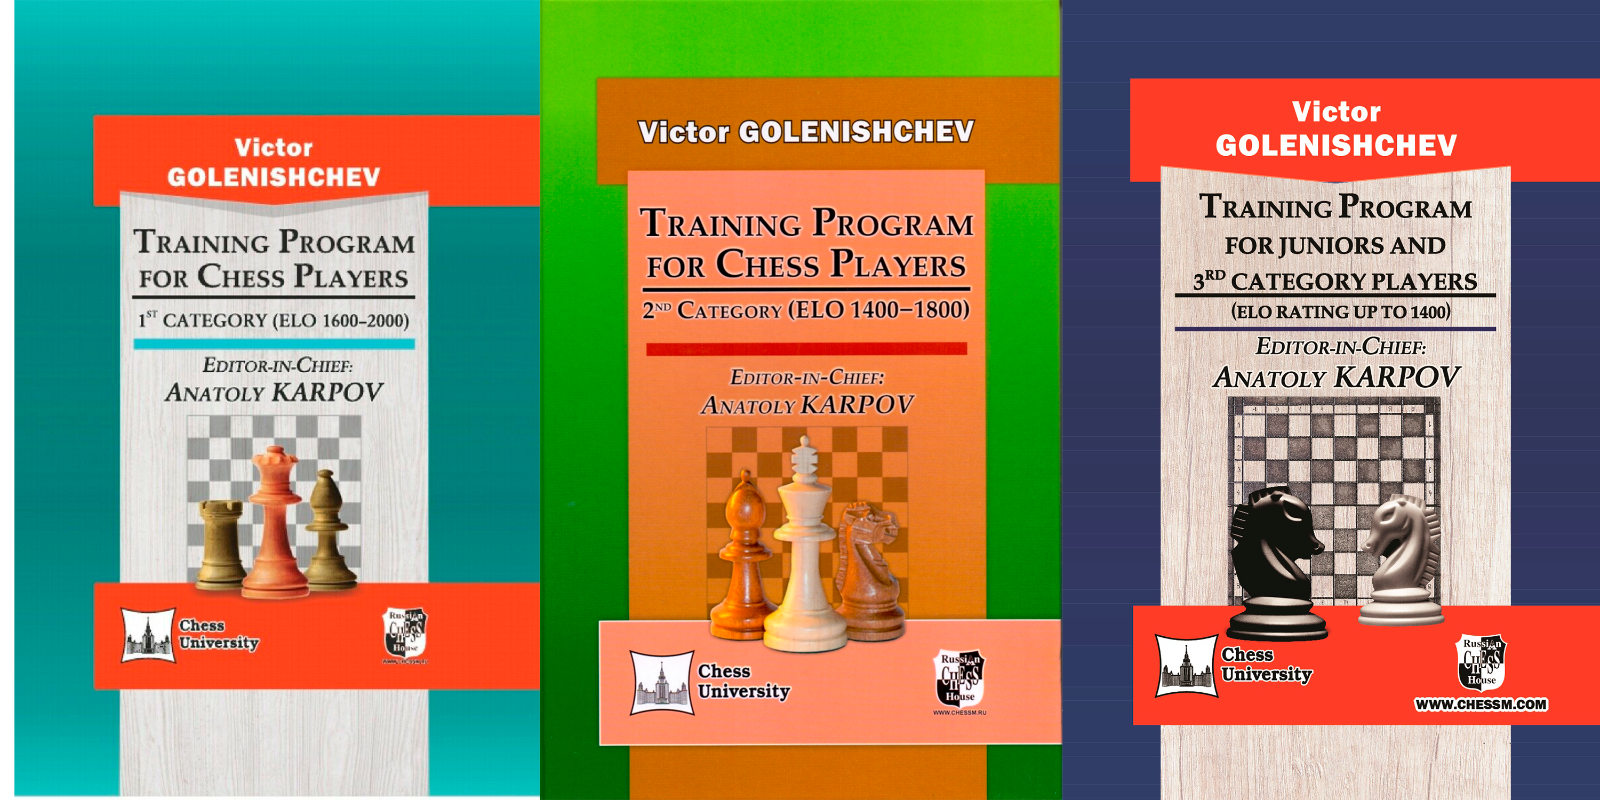 Botvinnik Soviet Chess Books. Karpov Three matches. Chess